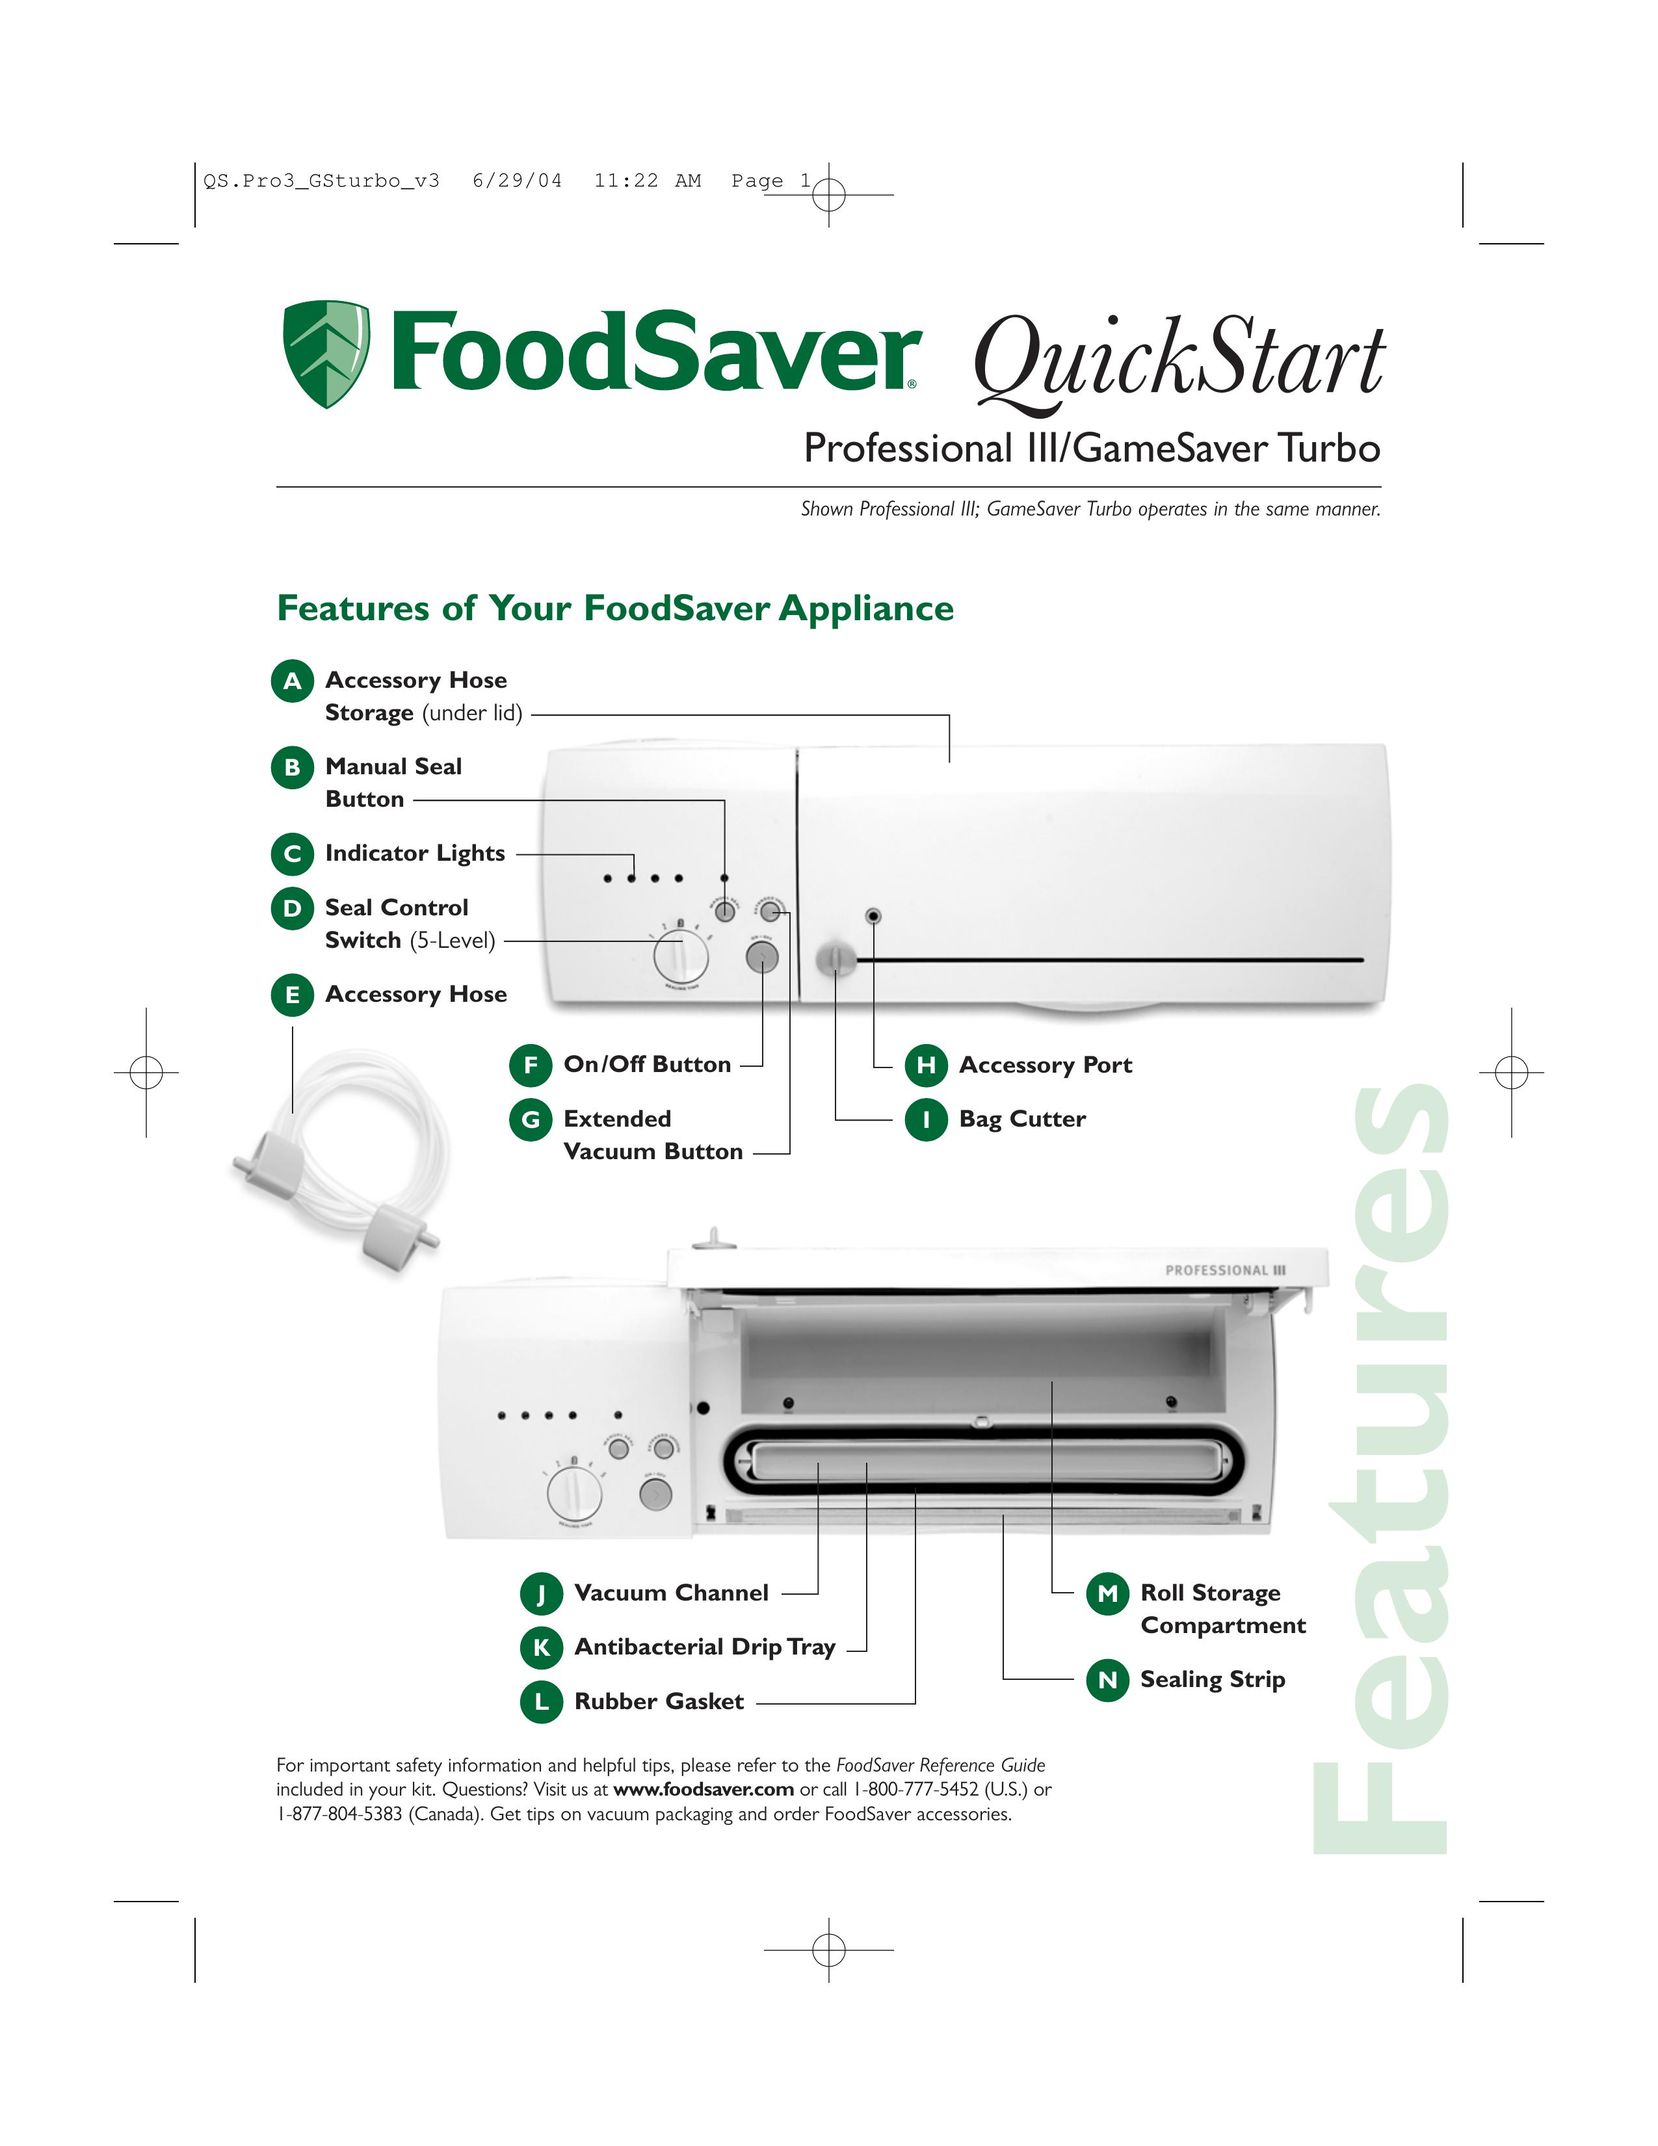 FoodSaver GameSaver Turbo Food Saver User Manual